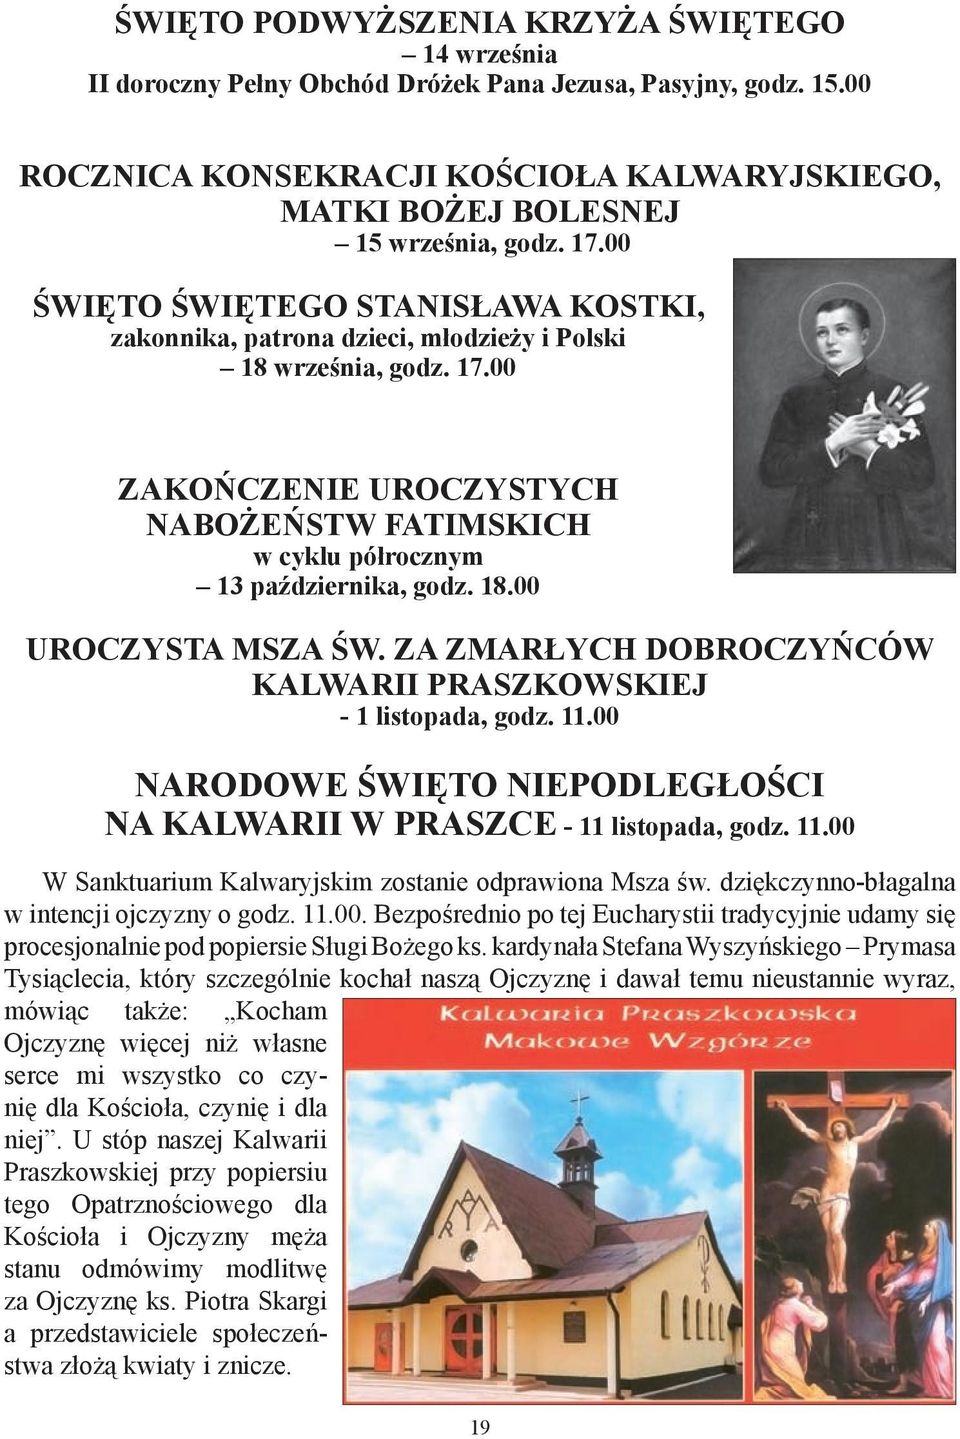 18.00 Uroczysta Msza św. za zmarłych dobroczyńców Kalwarii Praszkowskiej - 1 listopada, godz. 11.00 NARODOWE ŚWIĘTO NIEPODLEGŁOŚCI NA KALWARII W PRASZCE - 11 listopada, godz. 11.00 W Sanktuarium Kalwaryjskim zostanie odprawiona Msza św.